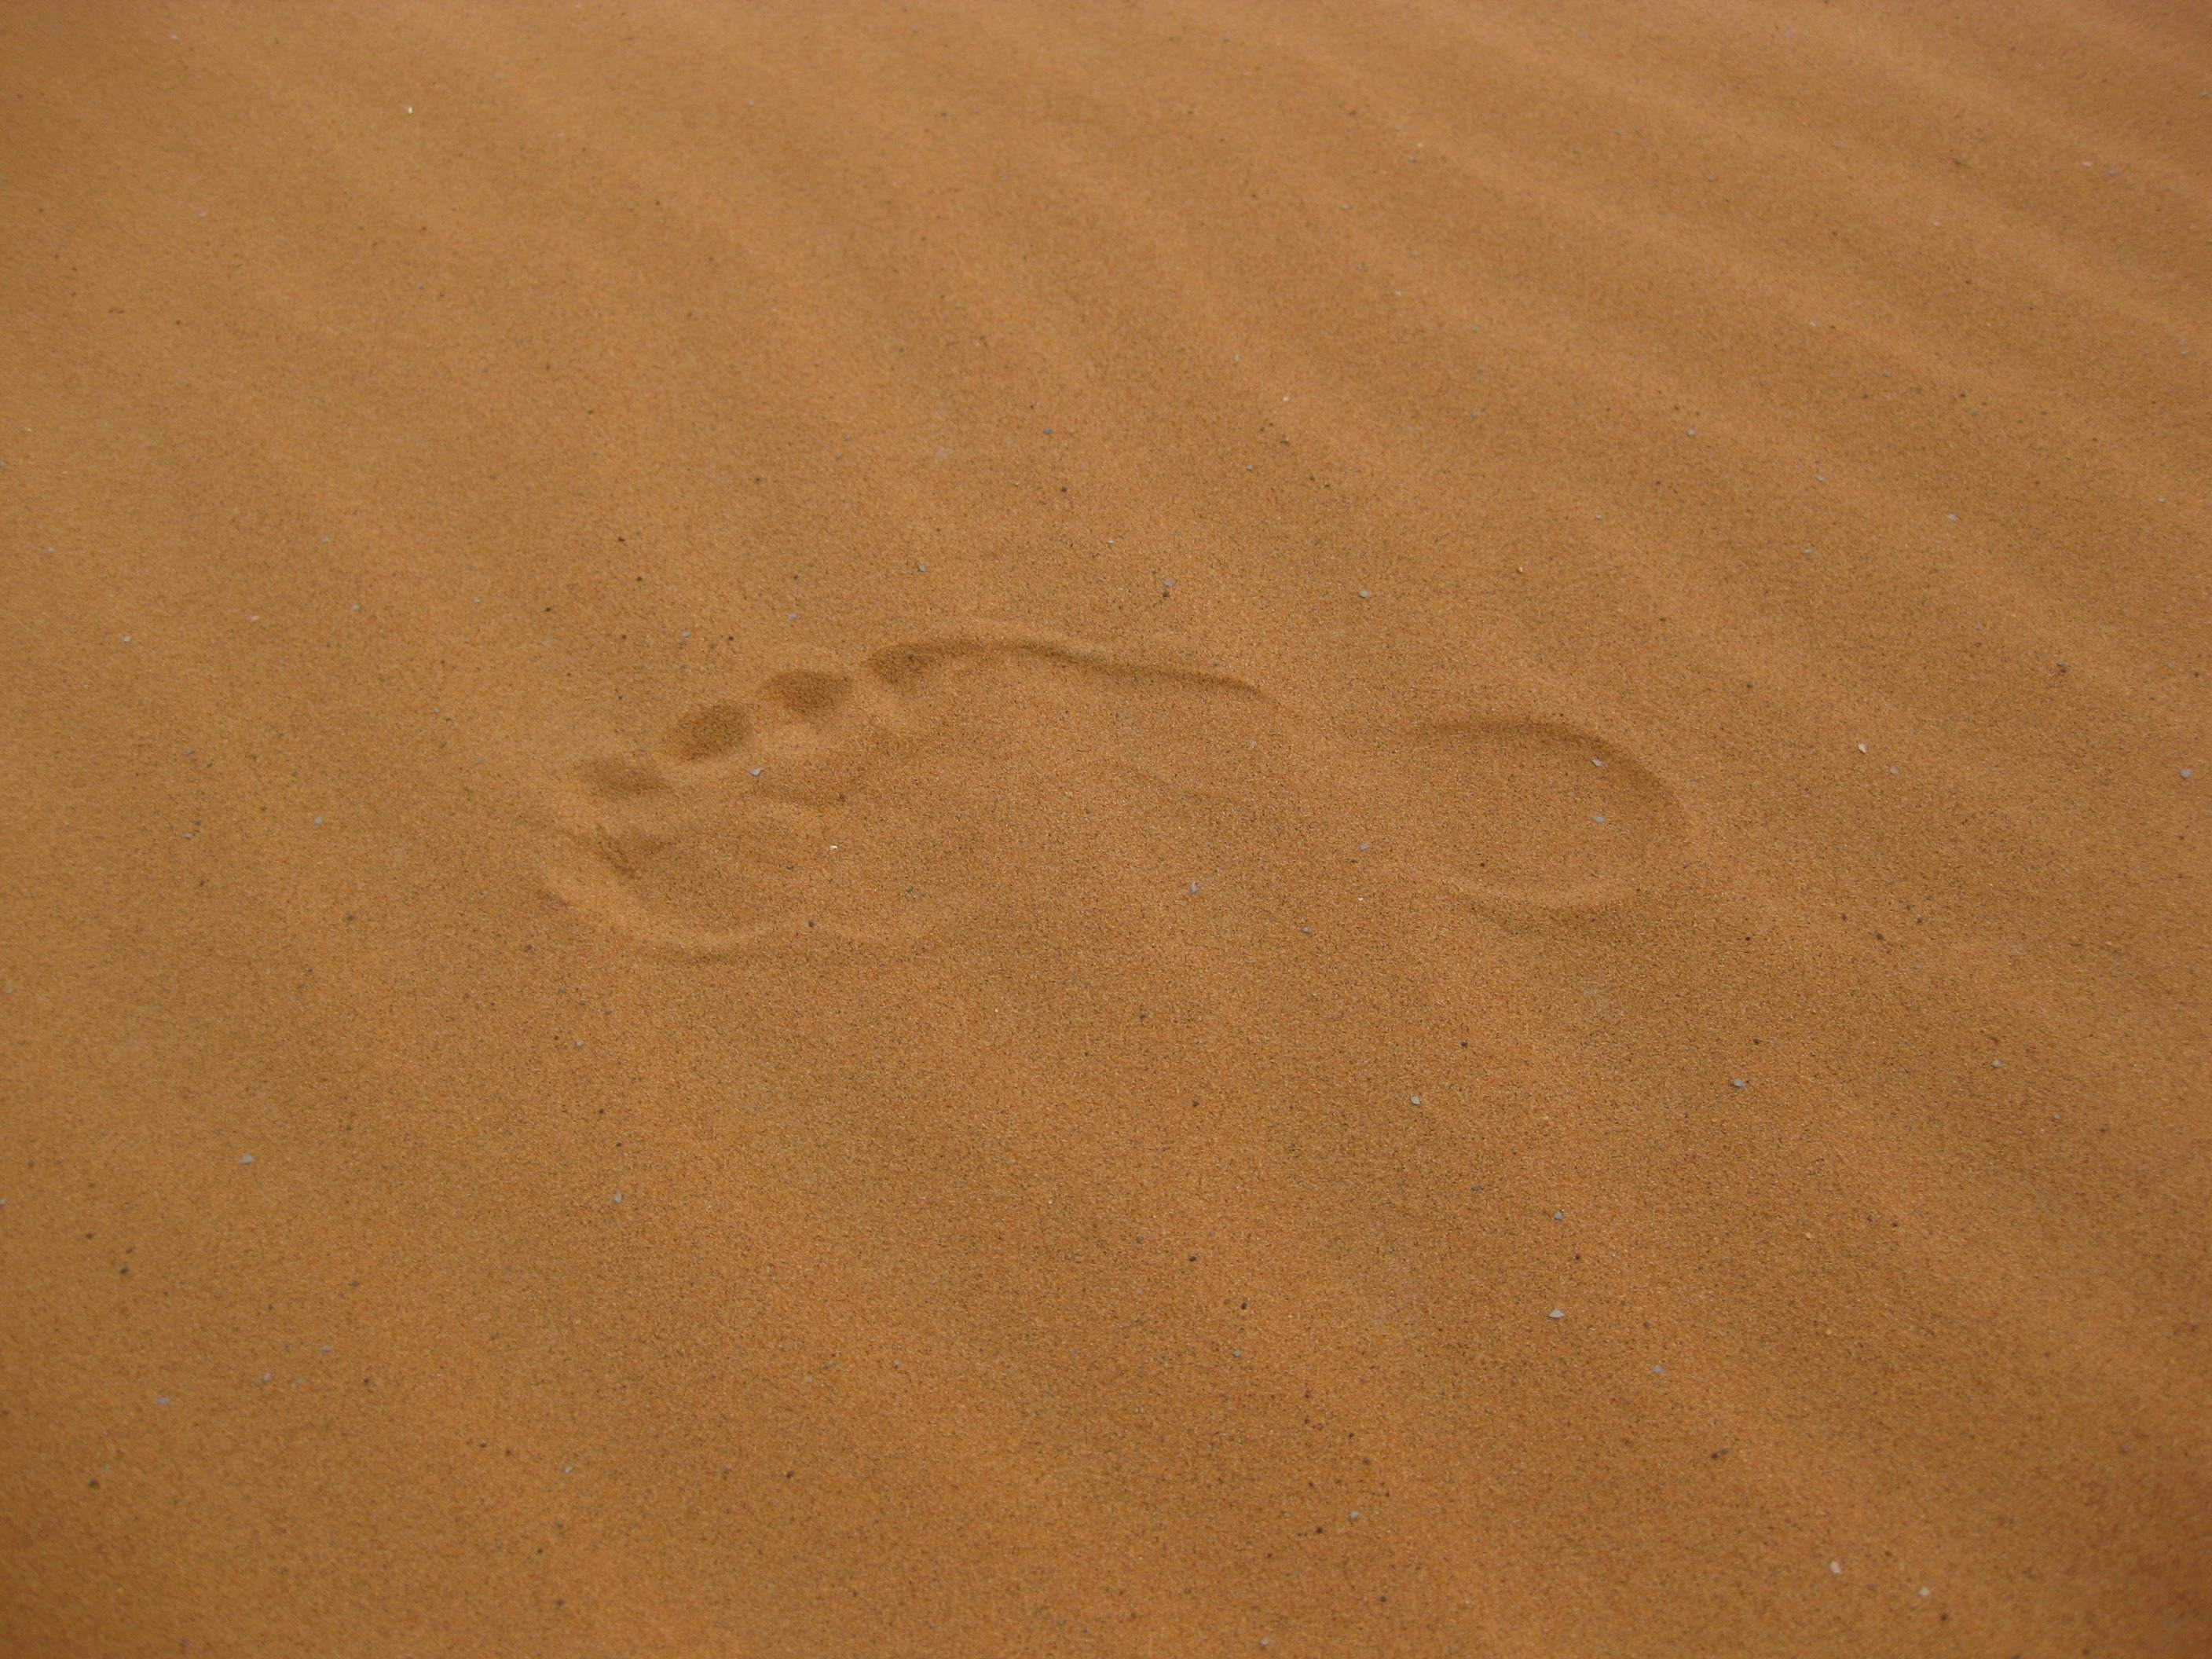 odcisk stopy na piasku